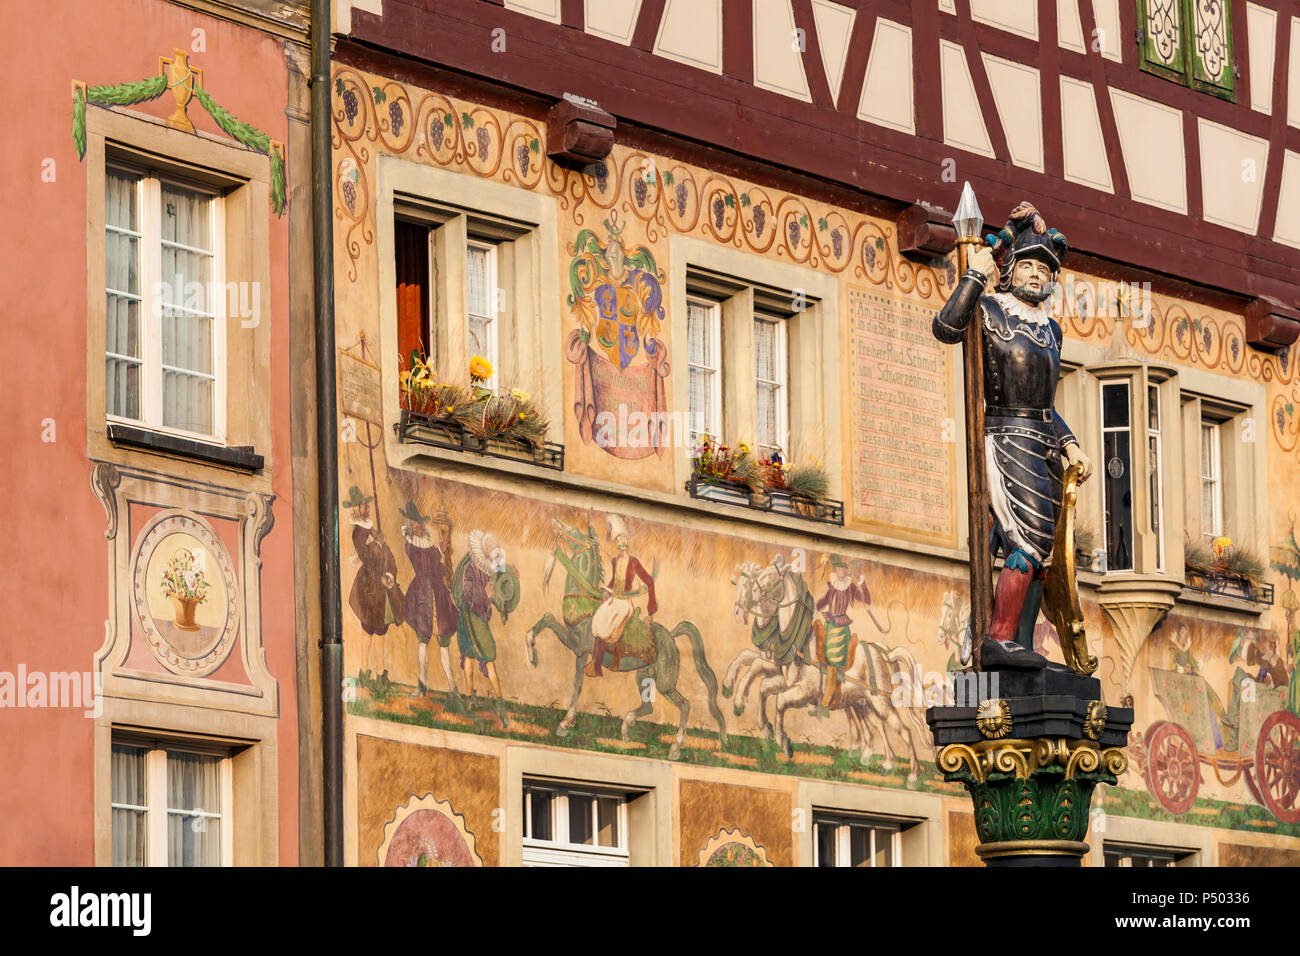 La Suisse, Stein am Rhein, vieille ville, ses maisons historiques à townhall square, des fresques, des sculptures sur fontaine Banque D'Images